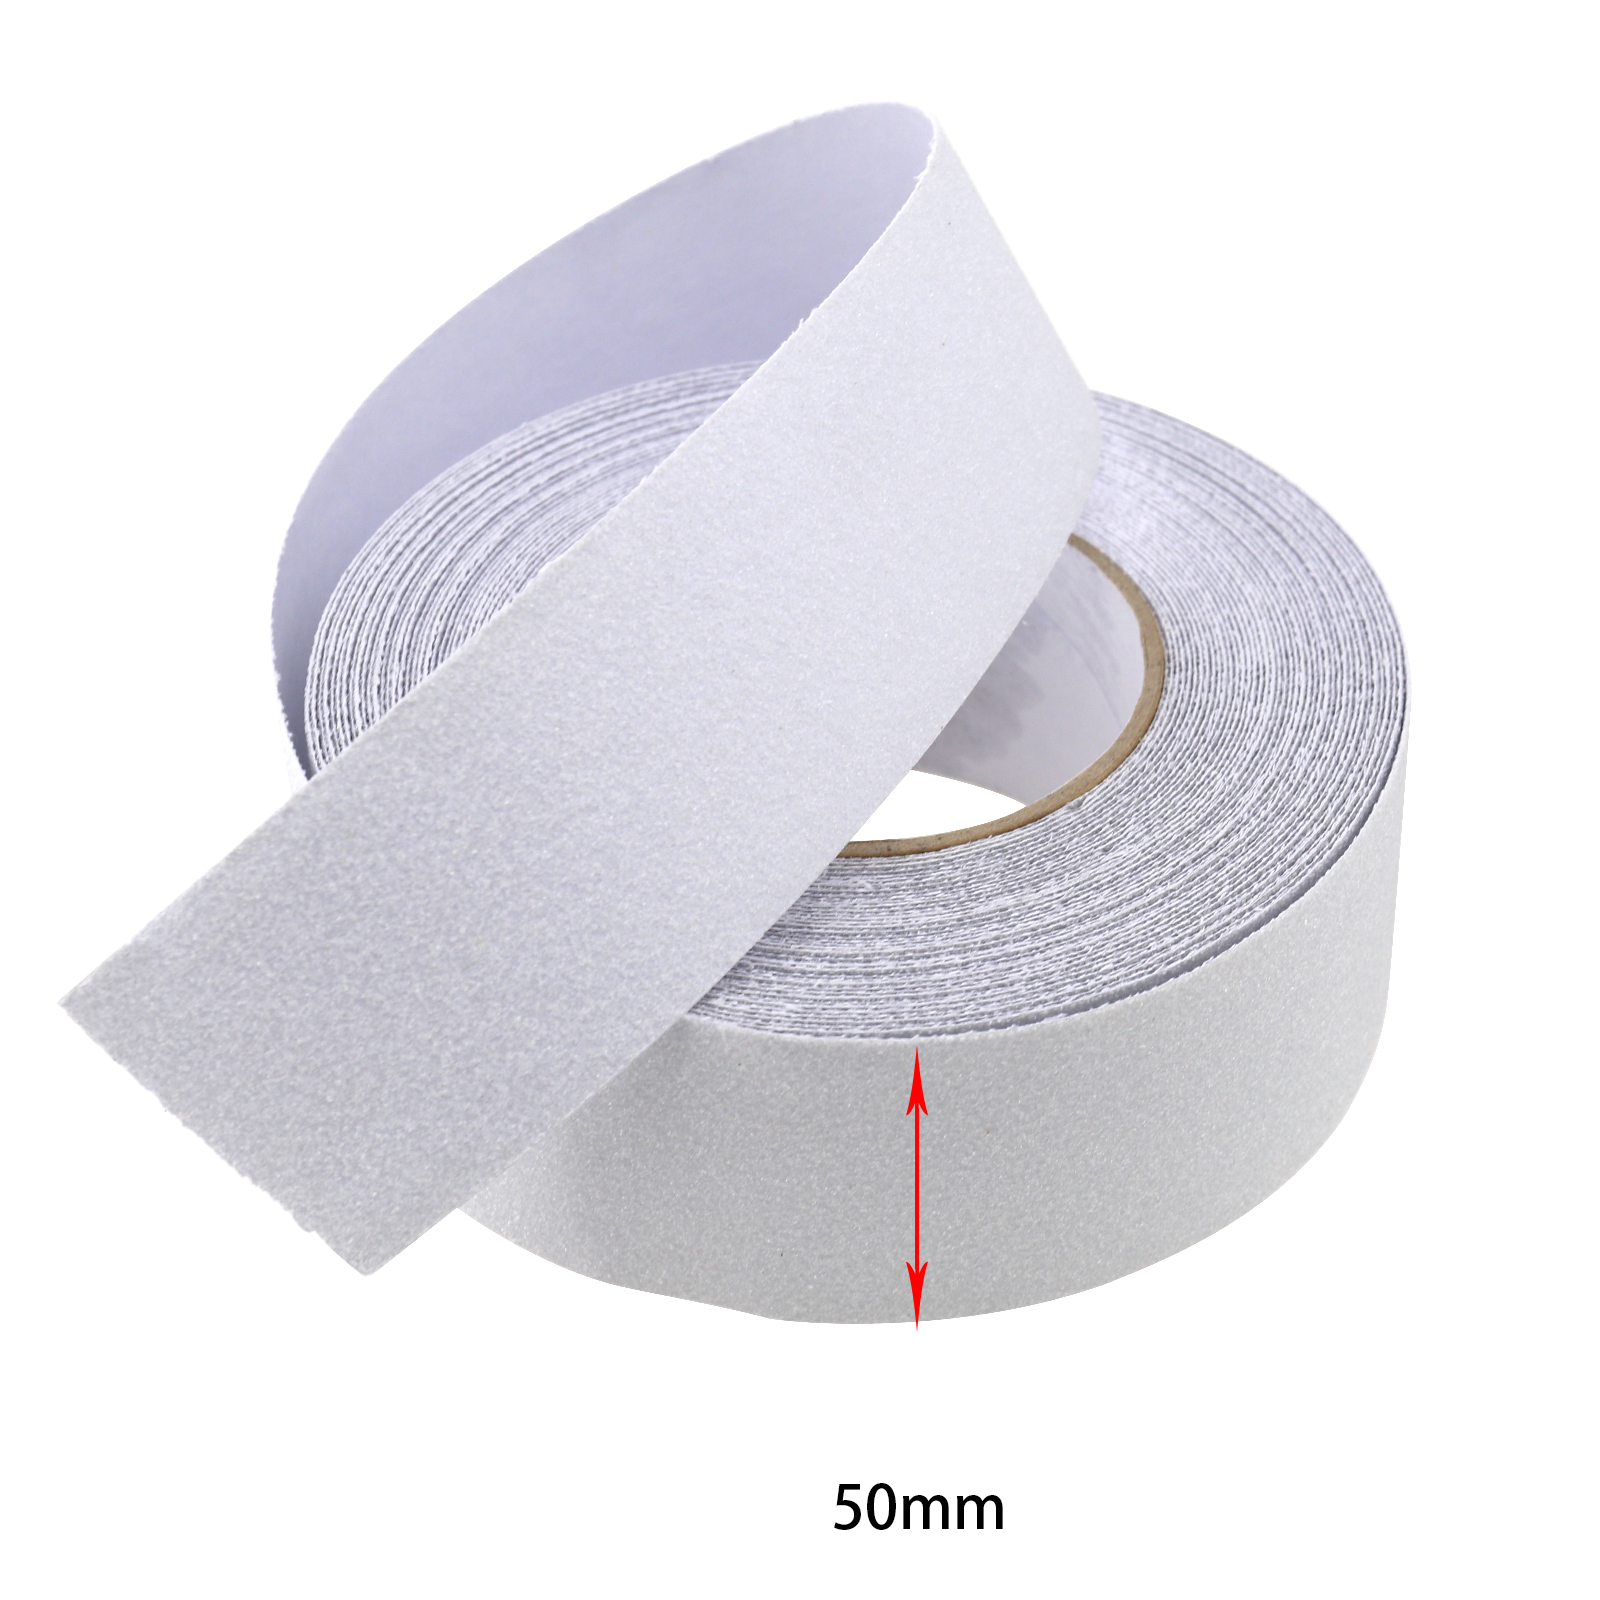 Sandpaper-like Anti Slip Tape Non Slip Strips Grip Sticker Floor Safety ...